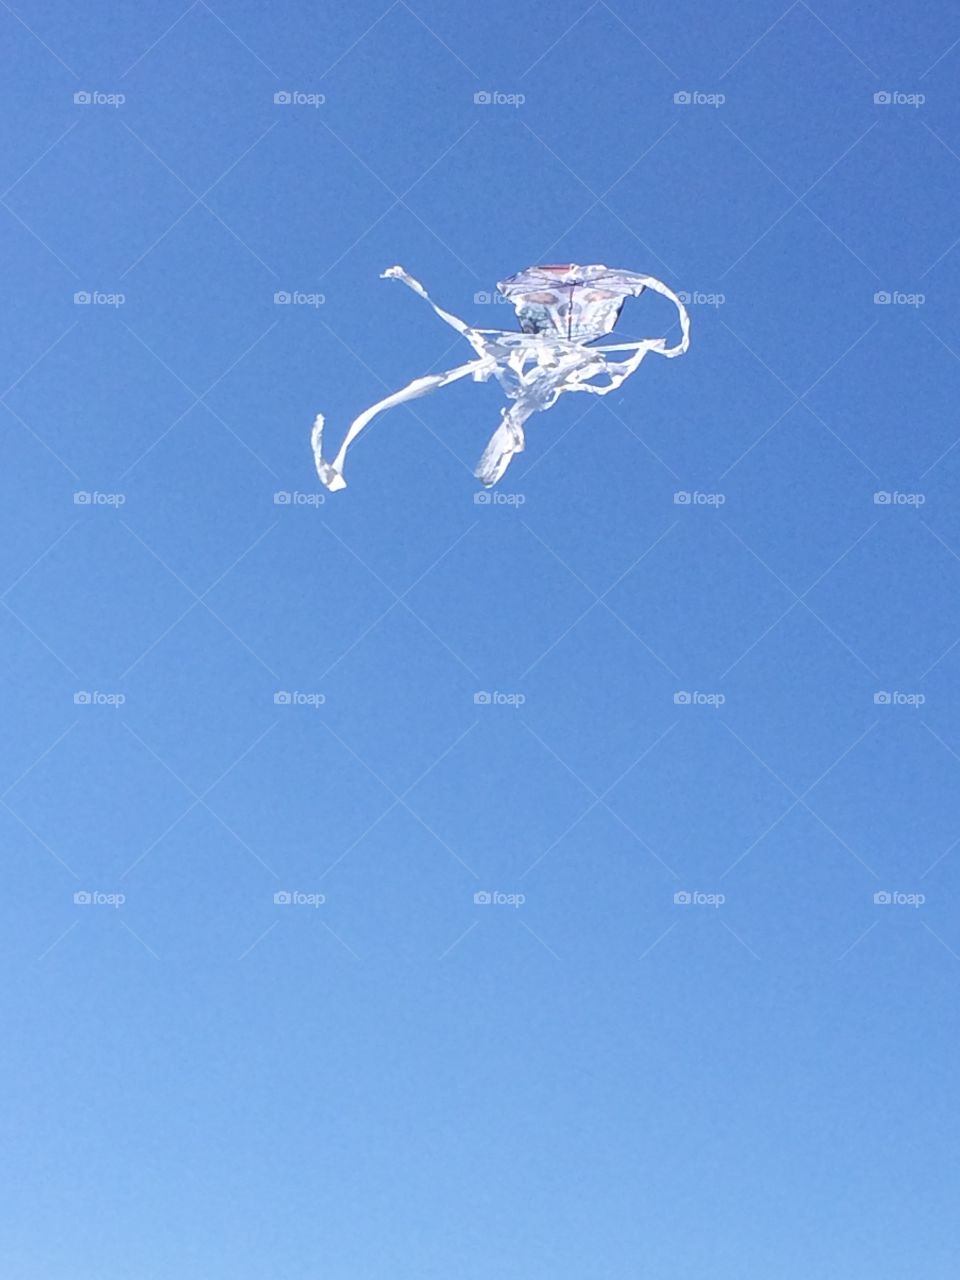 Skeleton kite Kenosha Wisconsin 